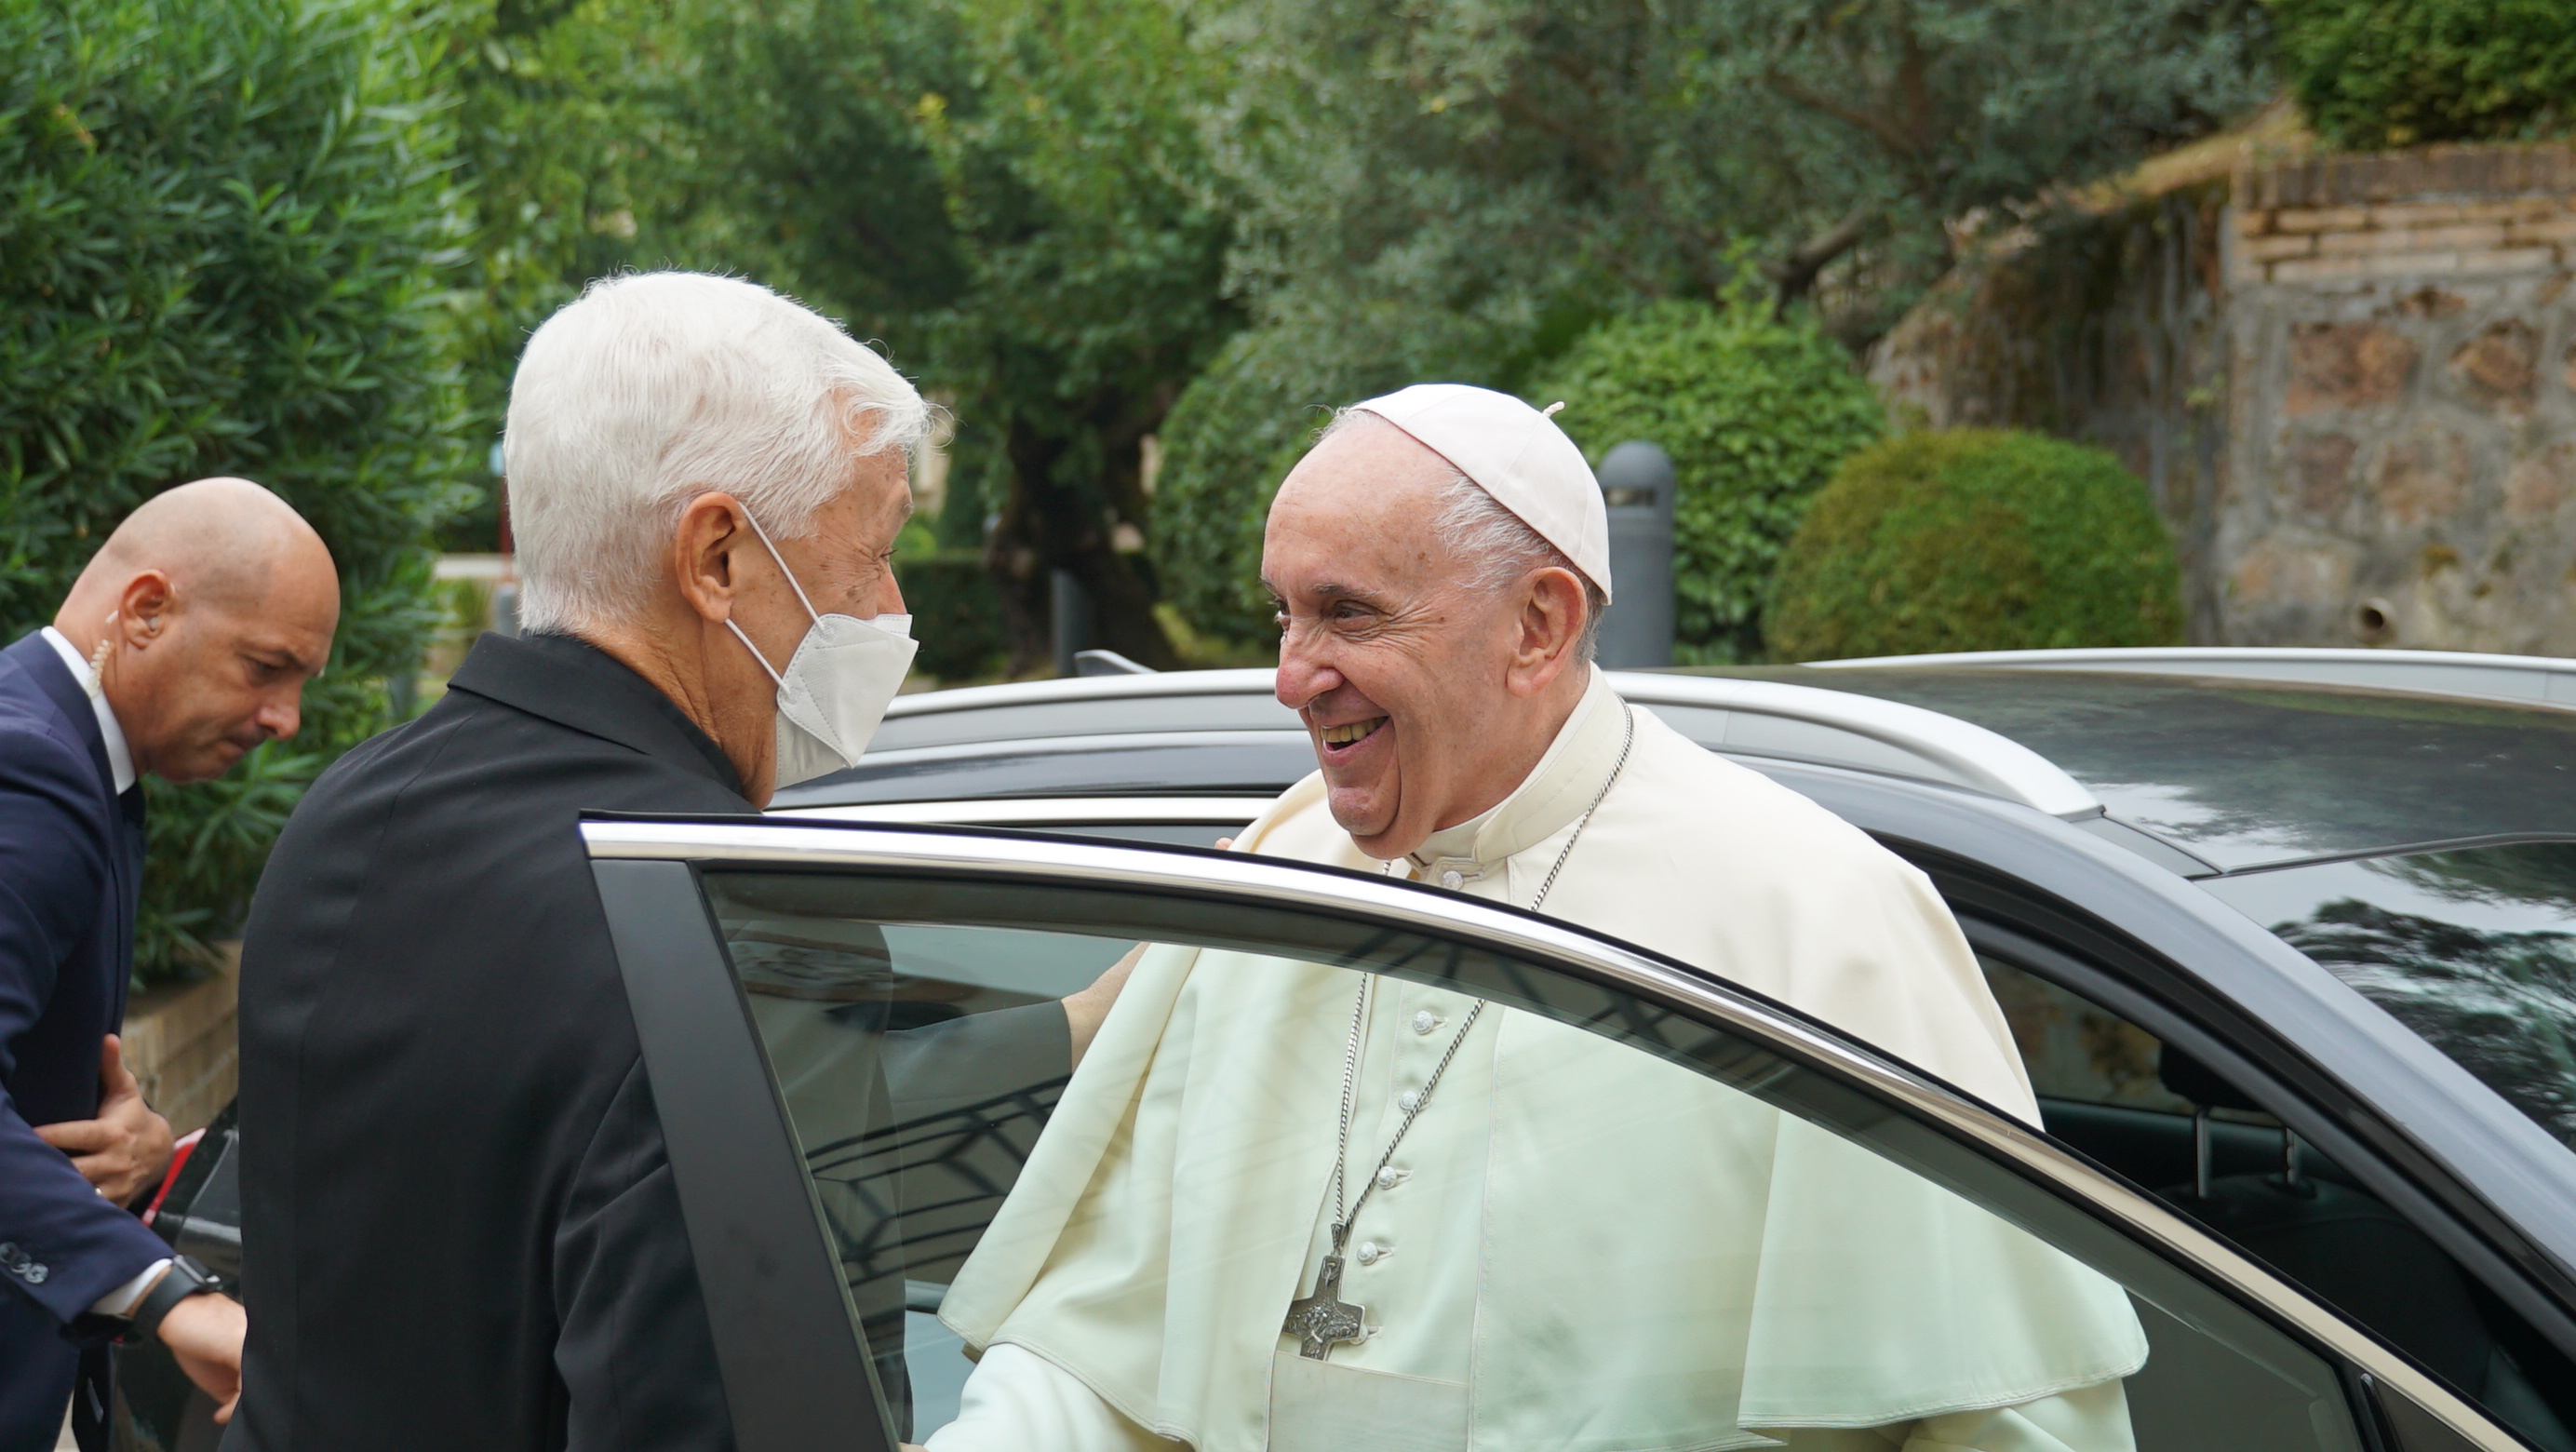 Le p. Arturo Sosa accueille le pape François © Twitter @JesuitsGlobal